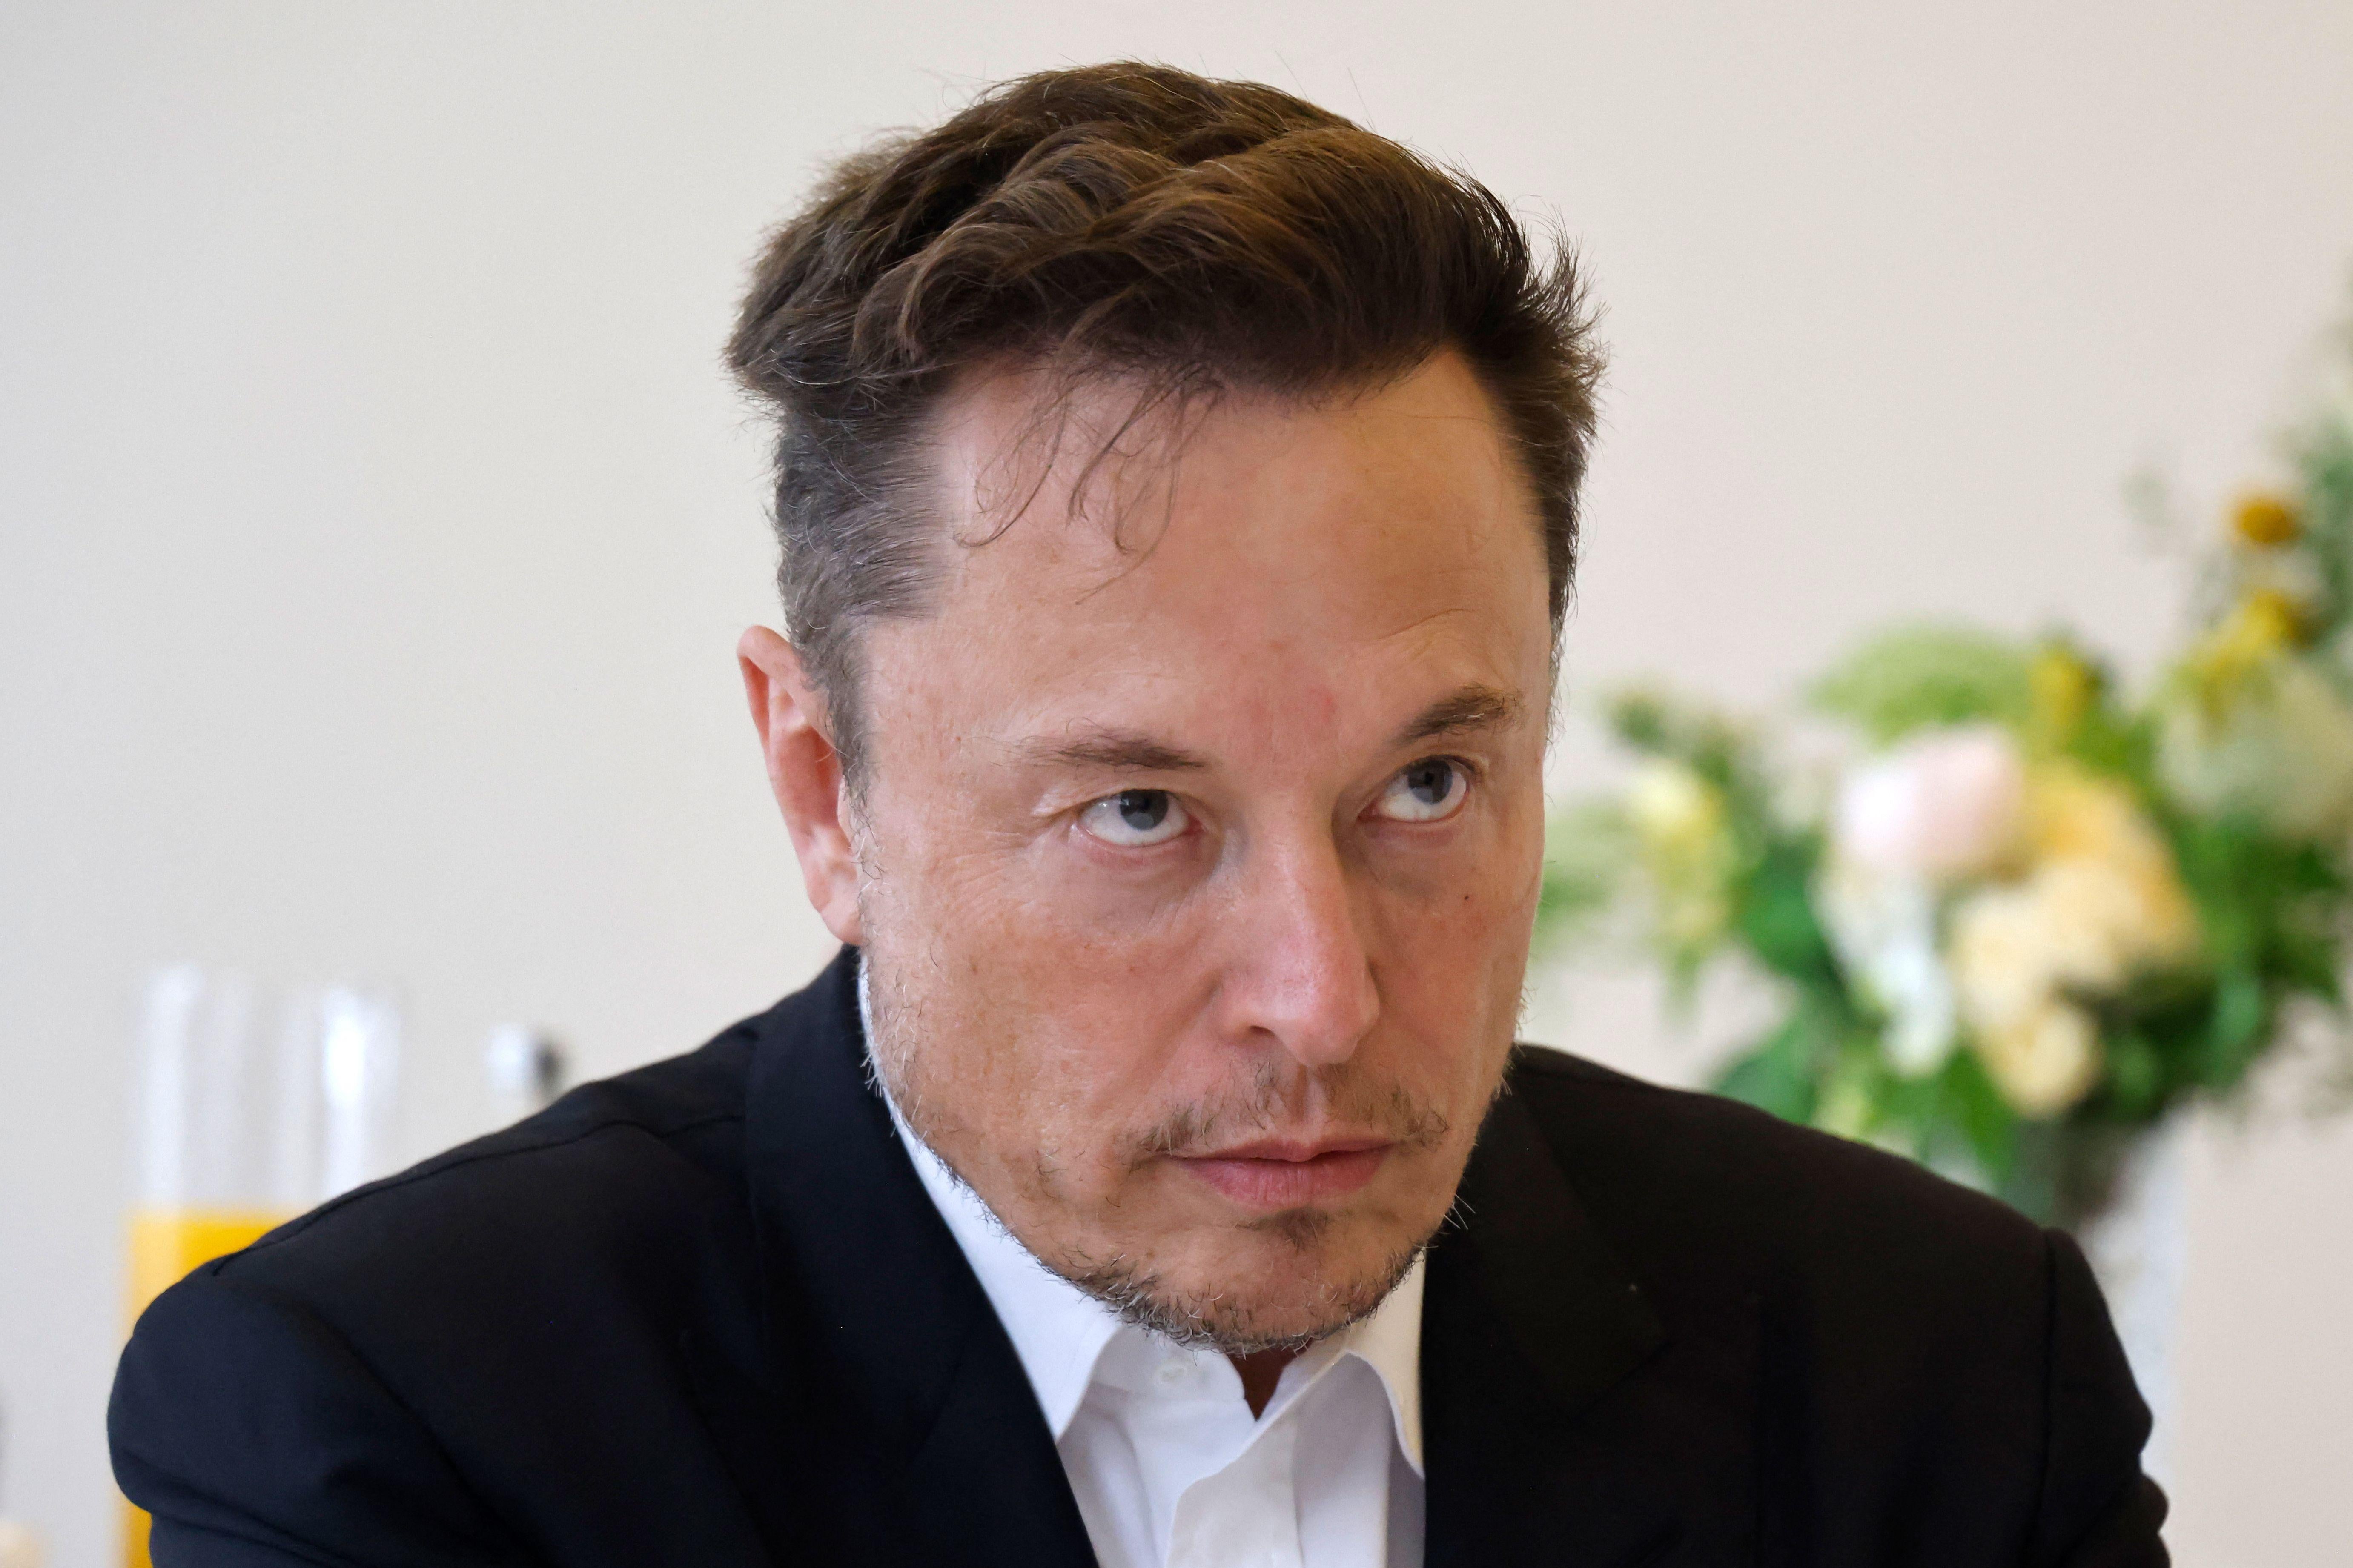 Elon Musk looks stern